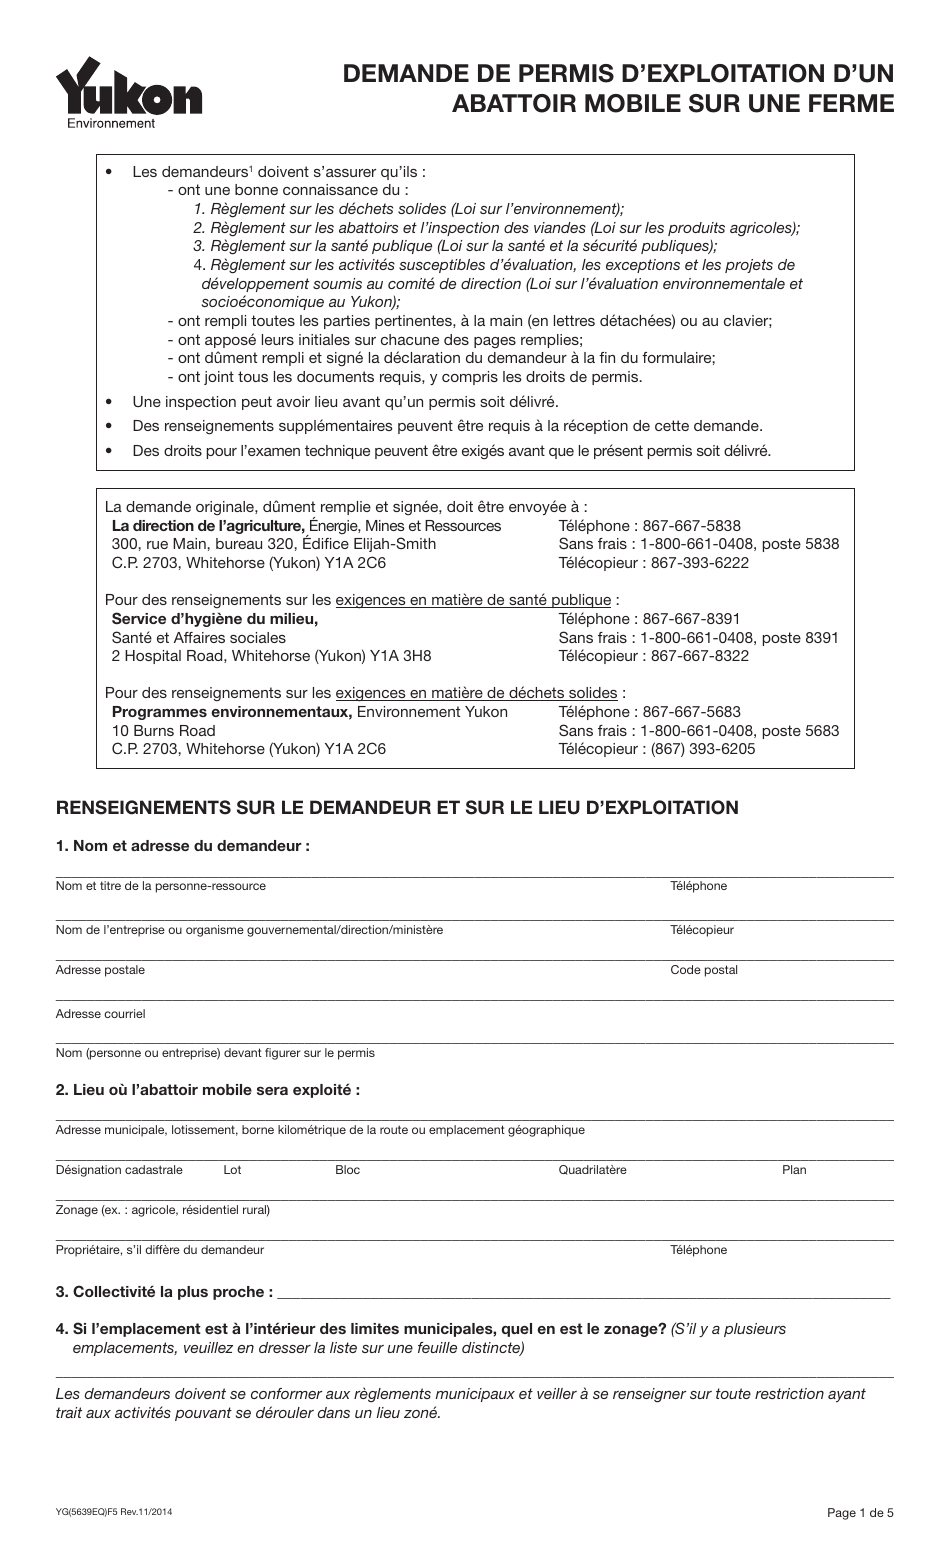 Forme YG5639 Demande De Permis Dexploitation Dun Abattoir Mobile Sur Une Ferme - Yukon, Canada (French), Page 1